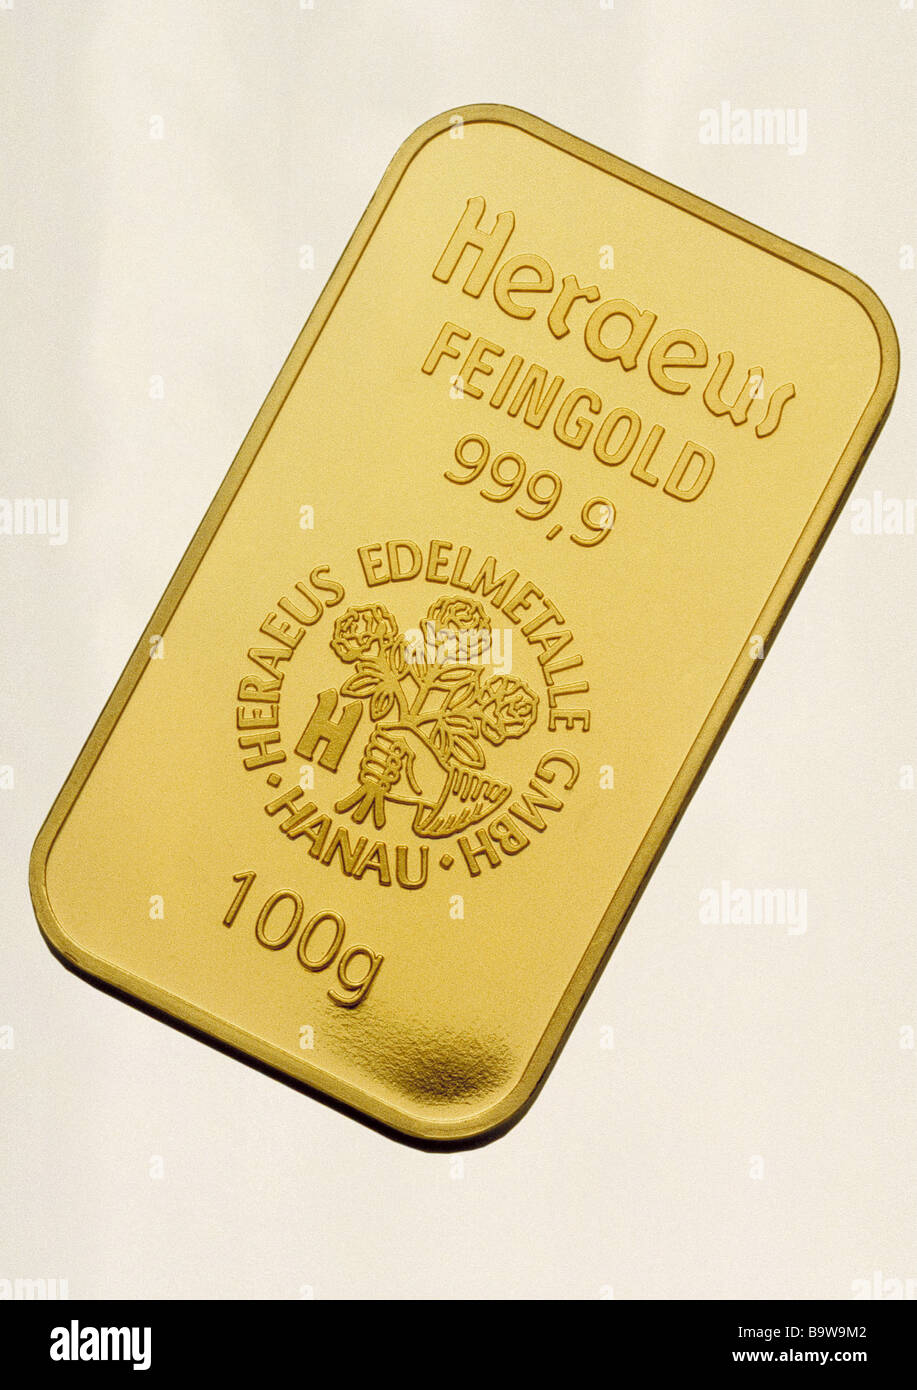 Centinaia di nove oro appalti barra di metallo prezioso oro puro bar nome azienda tagliare investmentsembossed lingotto oro golden Foto Stock